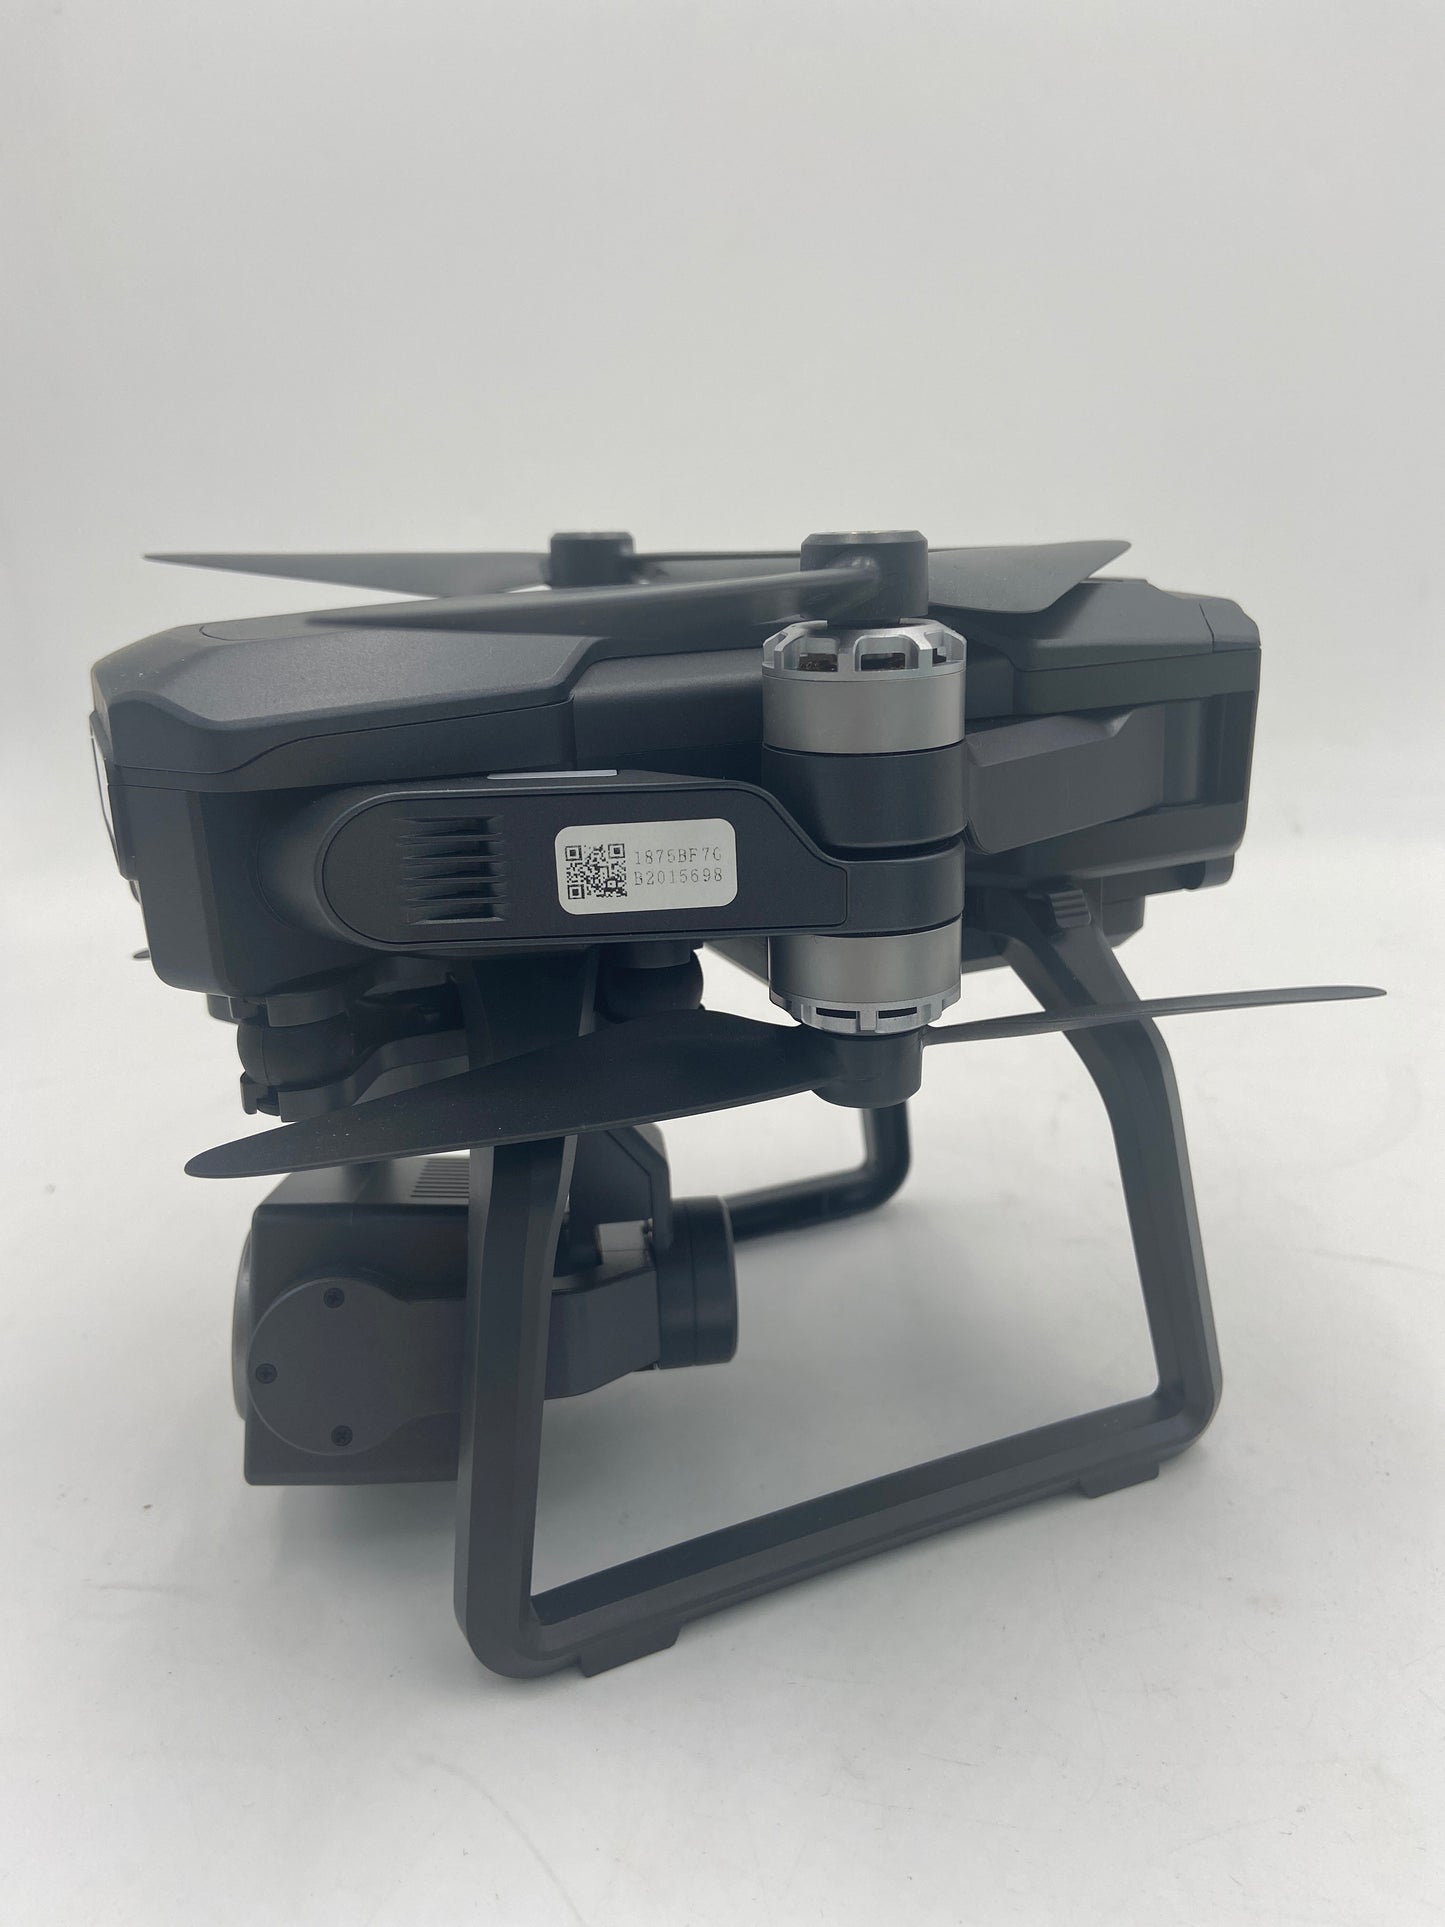 Bwine New F7GB2 4K Quadcopter Camera Drone